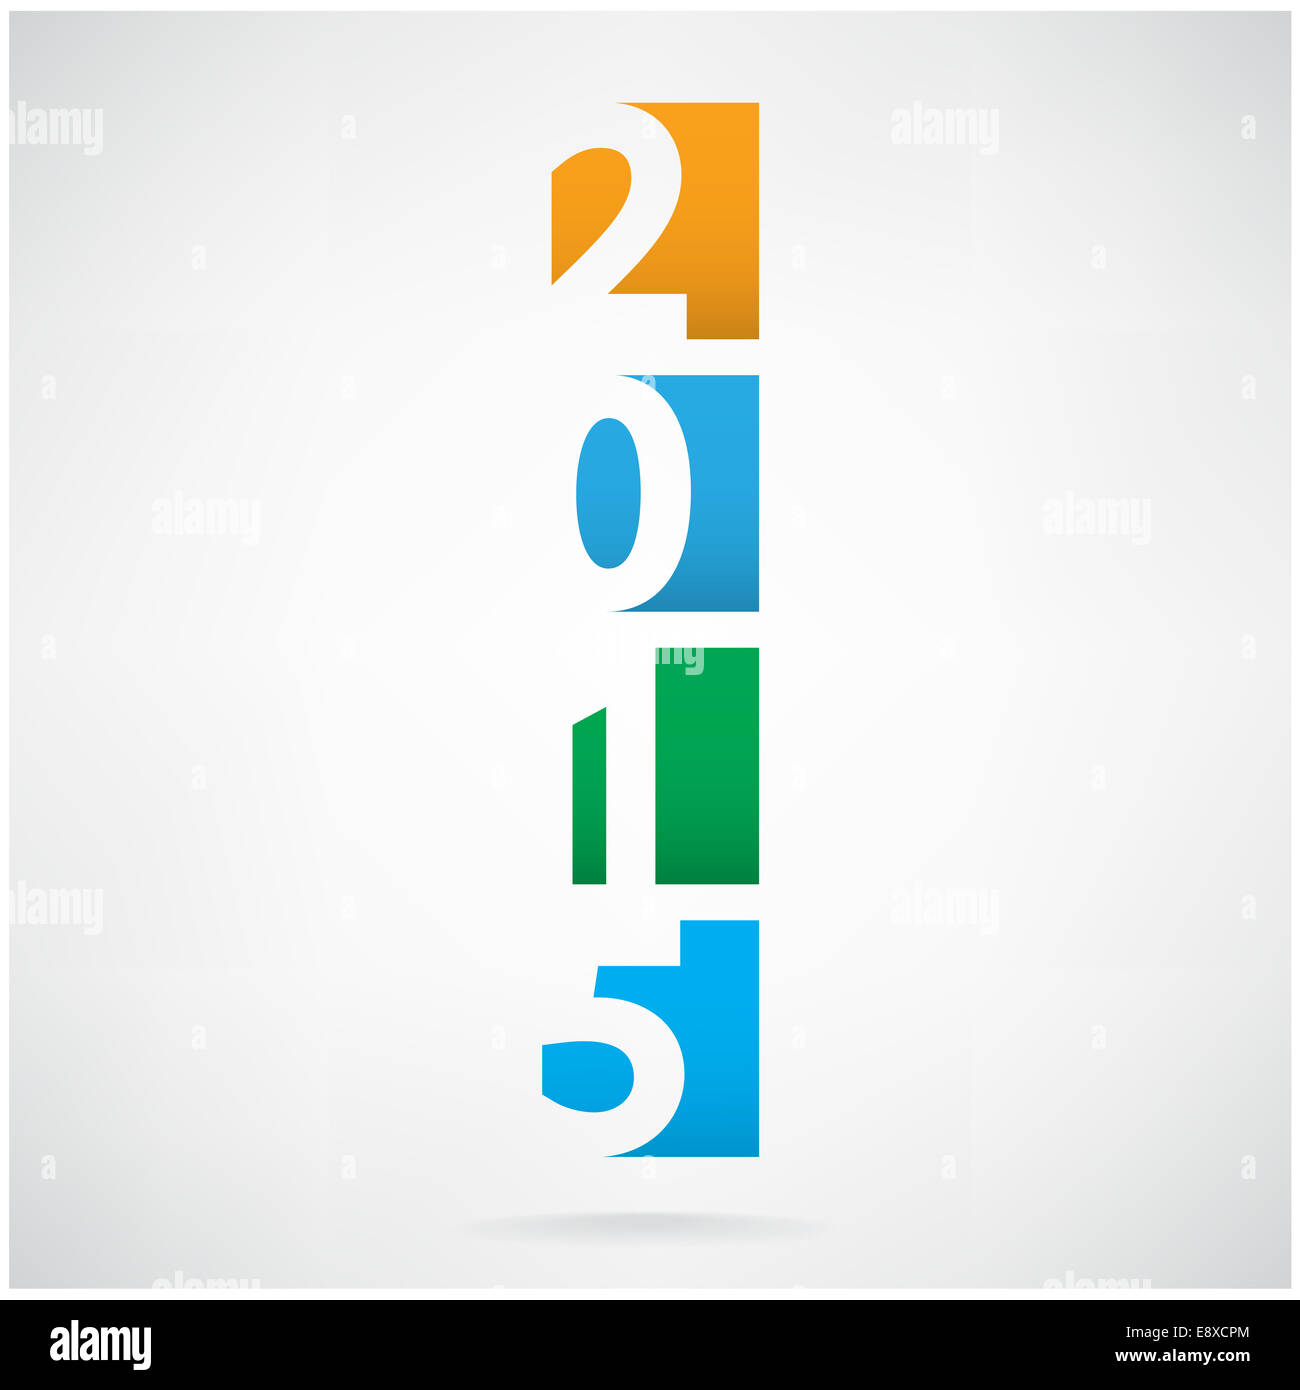 Creative felice anno nuovo 2015 design di testo Foto Stock